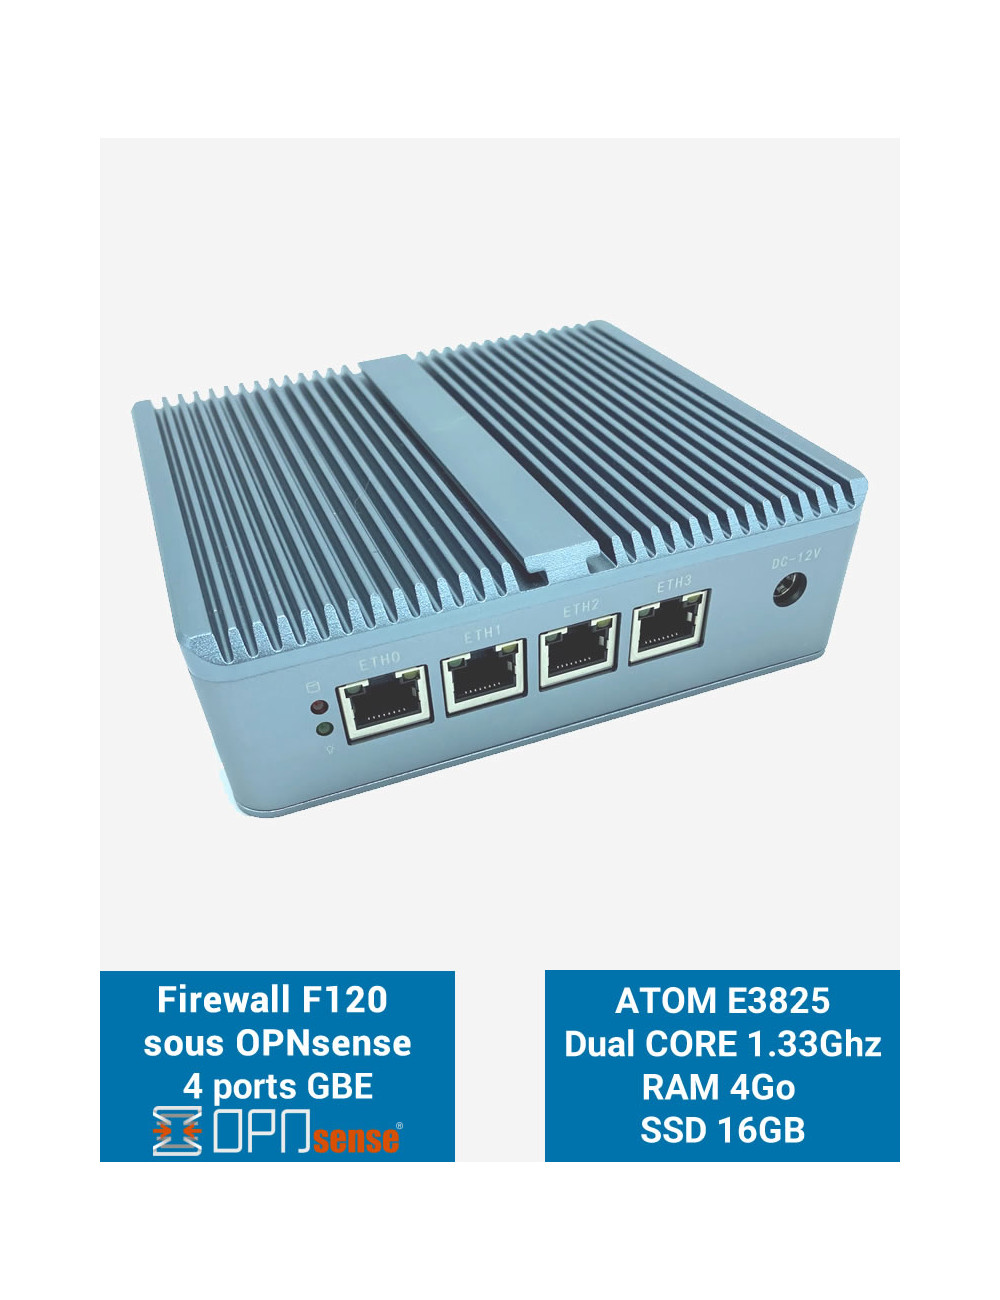 Firewall OPNsense® F120 4 ports 4GB SSD 16GB